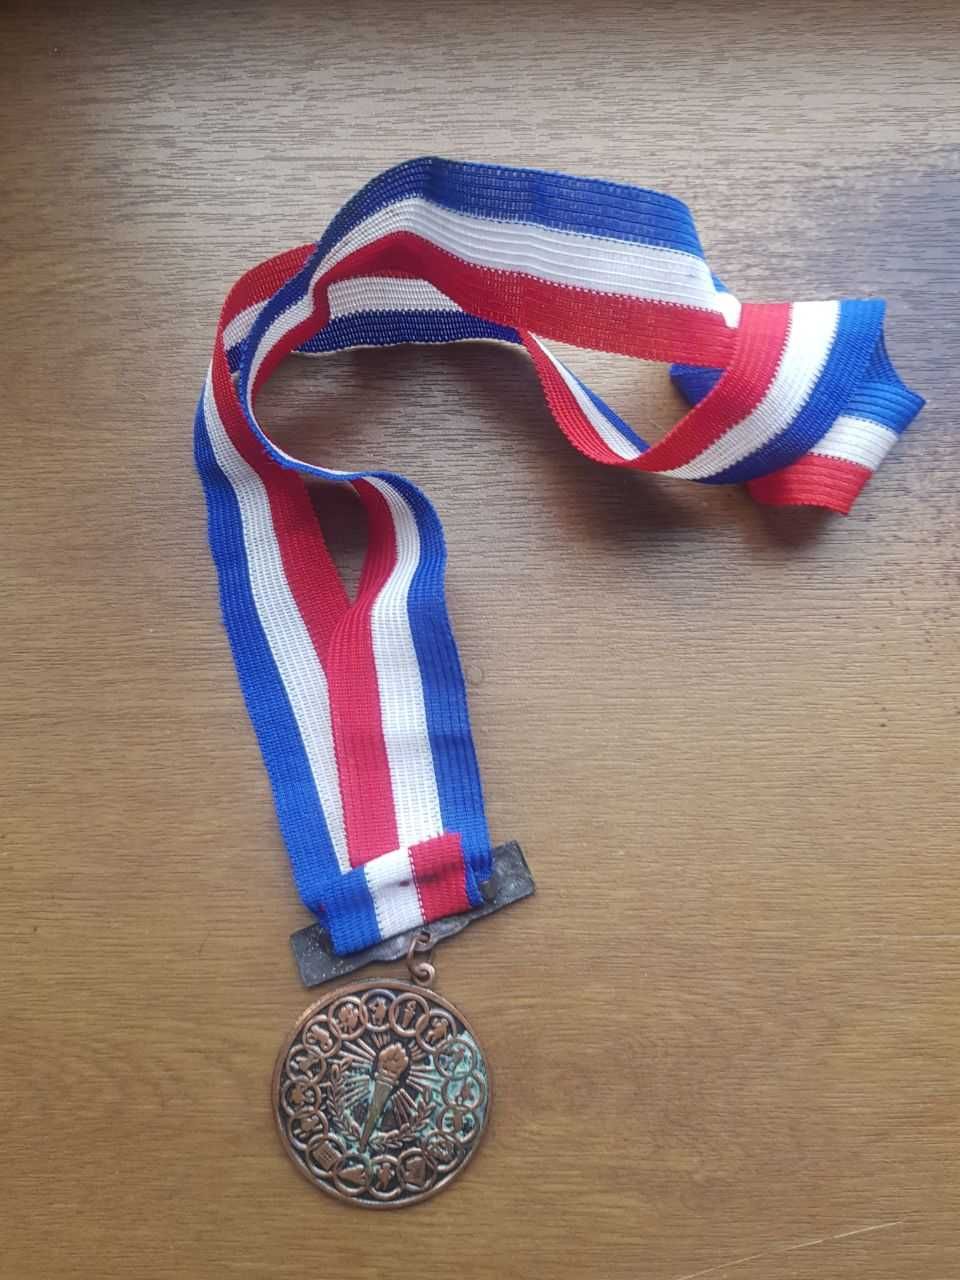 Спортивная медаль. Бухарест 92